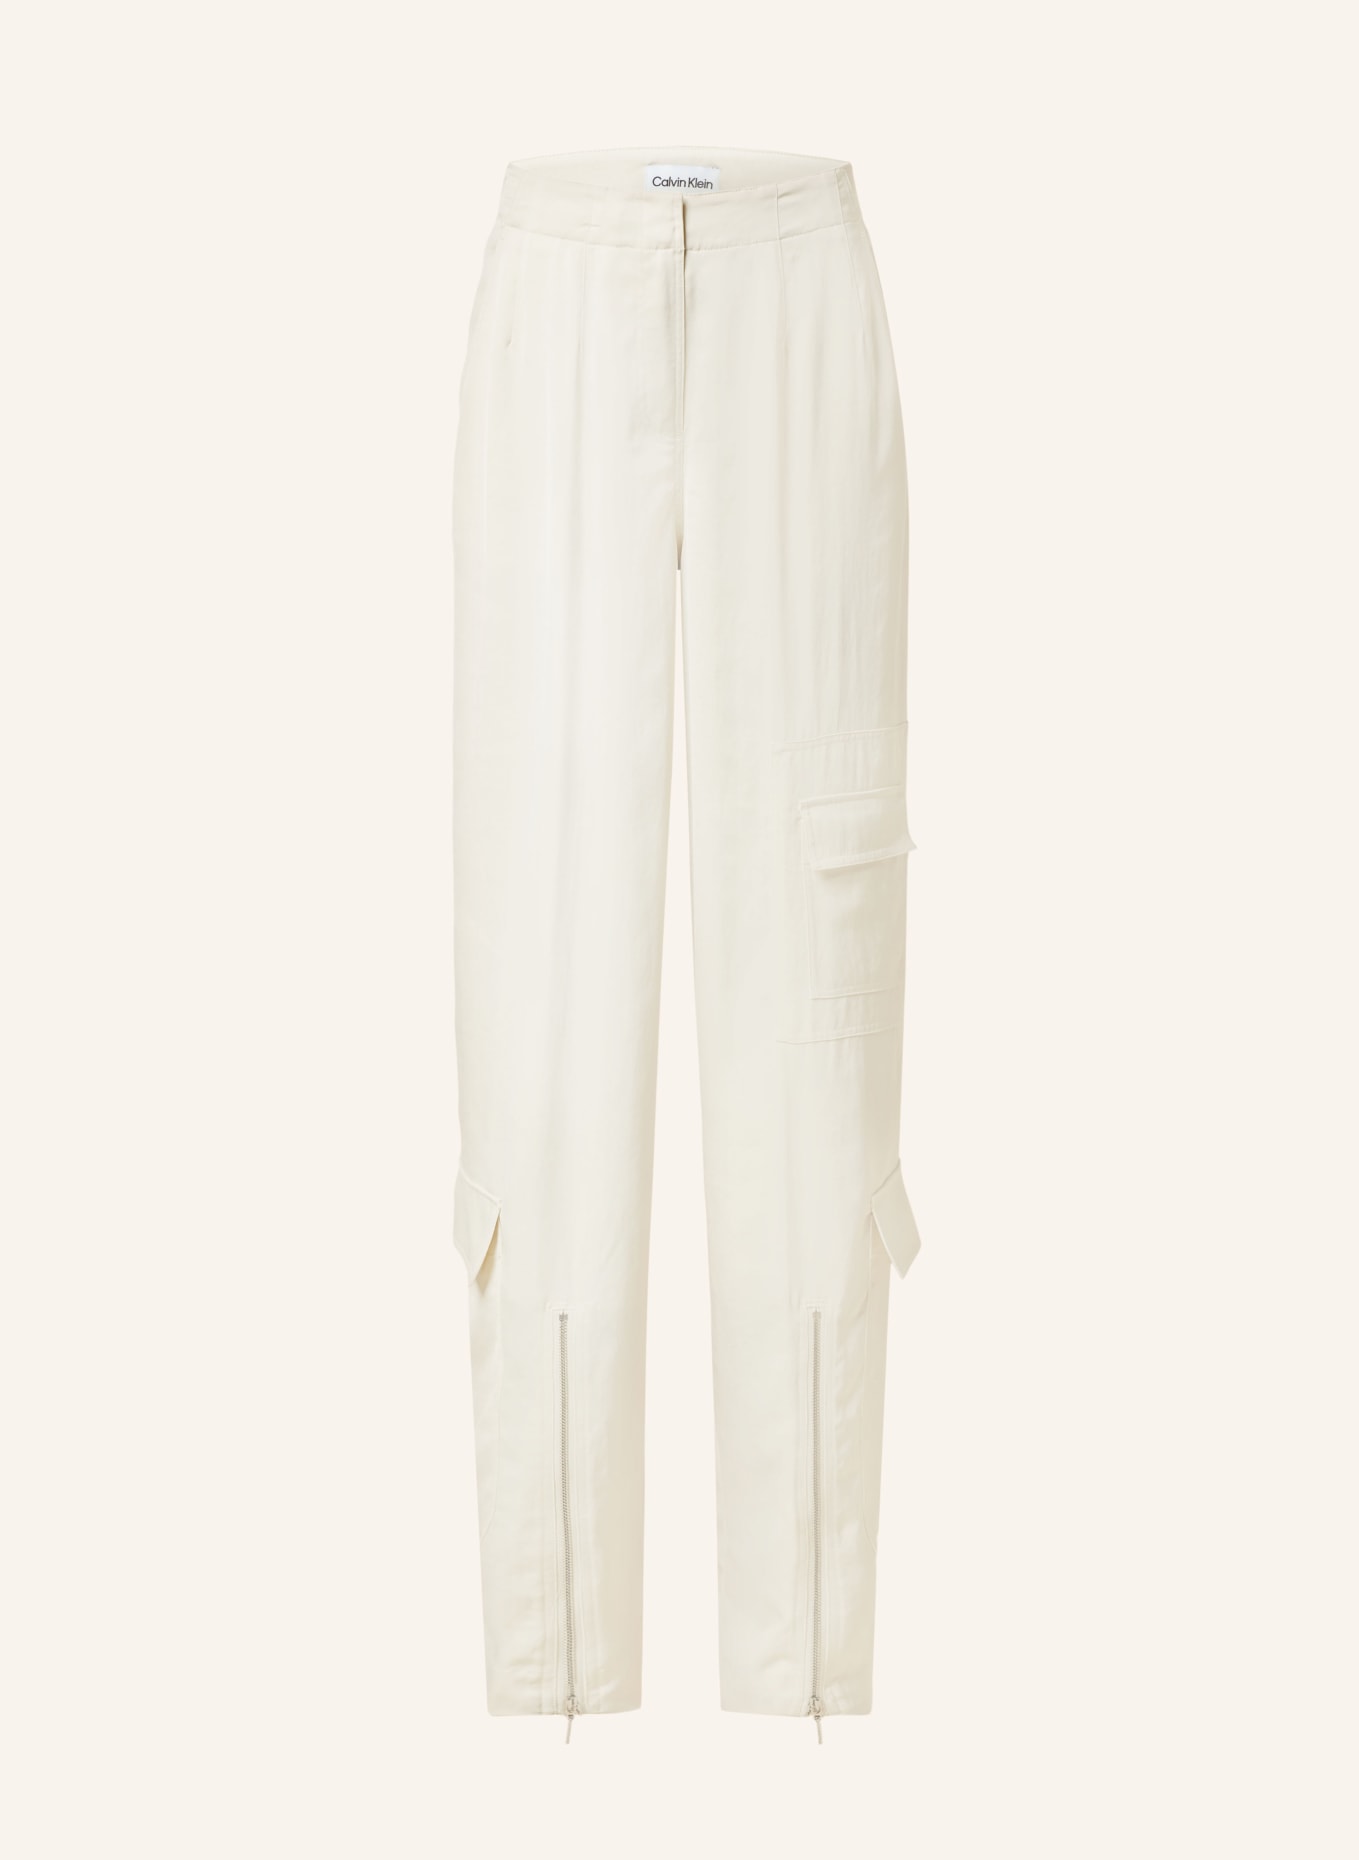 Calvin Klein Cargo pants made of satin, Color: CREAM (Image 1)